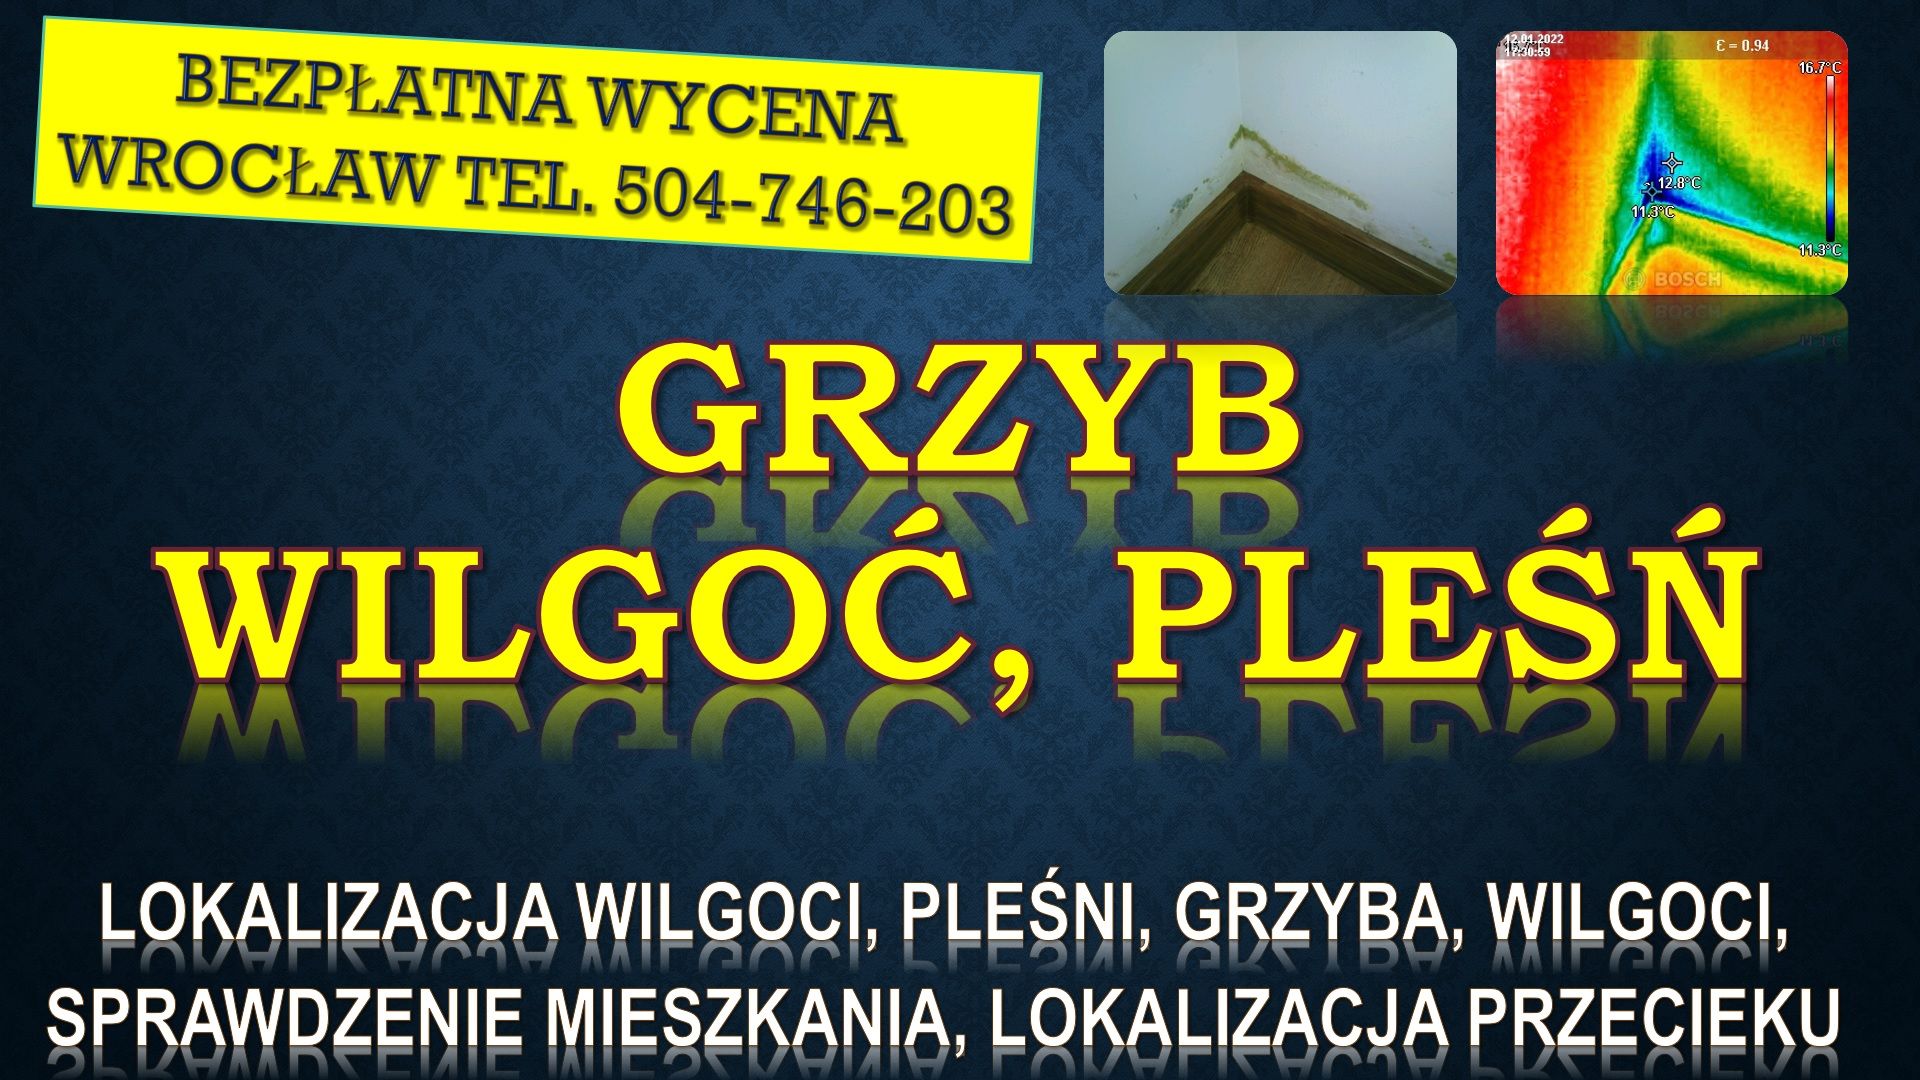 Odgrzybianie mieszkania, cena, tel. 504-746-203. Wrocław. Termowizja wilgoci Wrocław - Zdjęcie 1